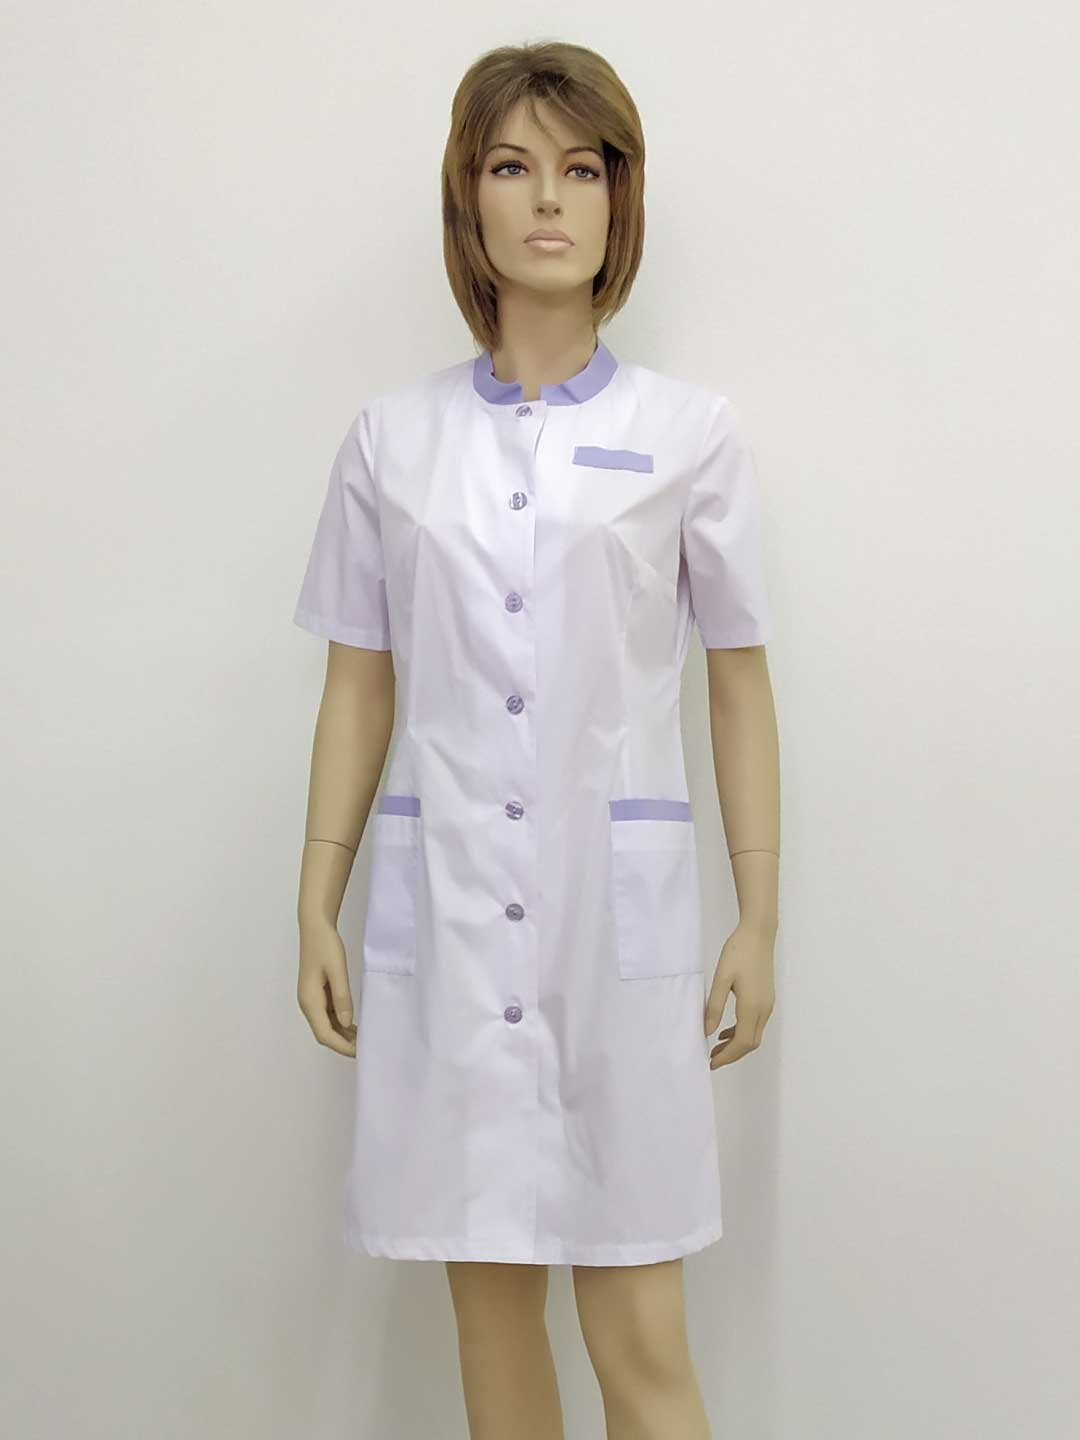 Халат женский производитель Фабрика швейных изделий №3 модель М-572 рост 164 размер 44 ткань поликот цвет белый с розовой отделкой